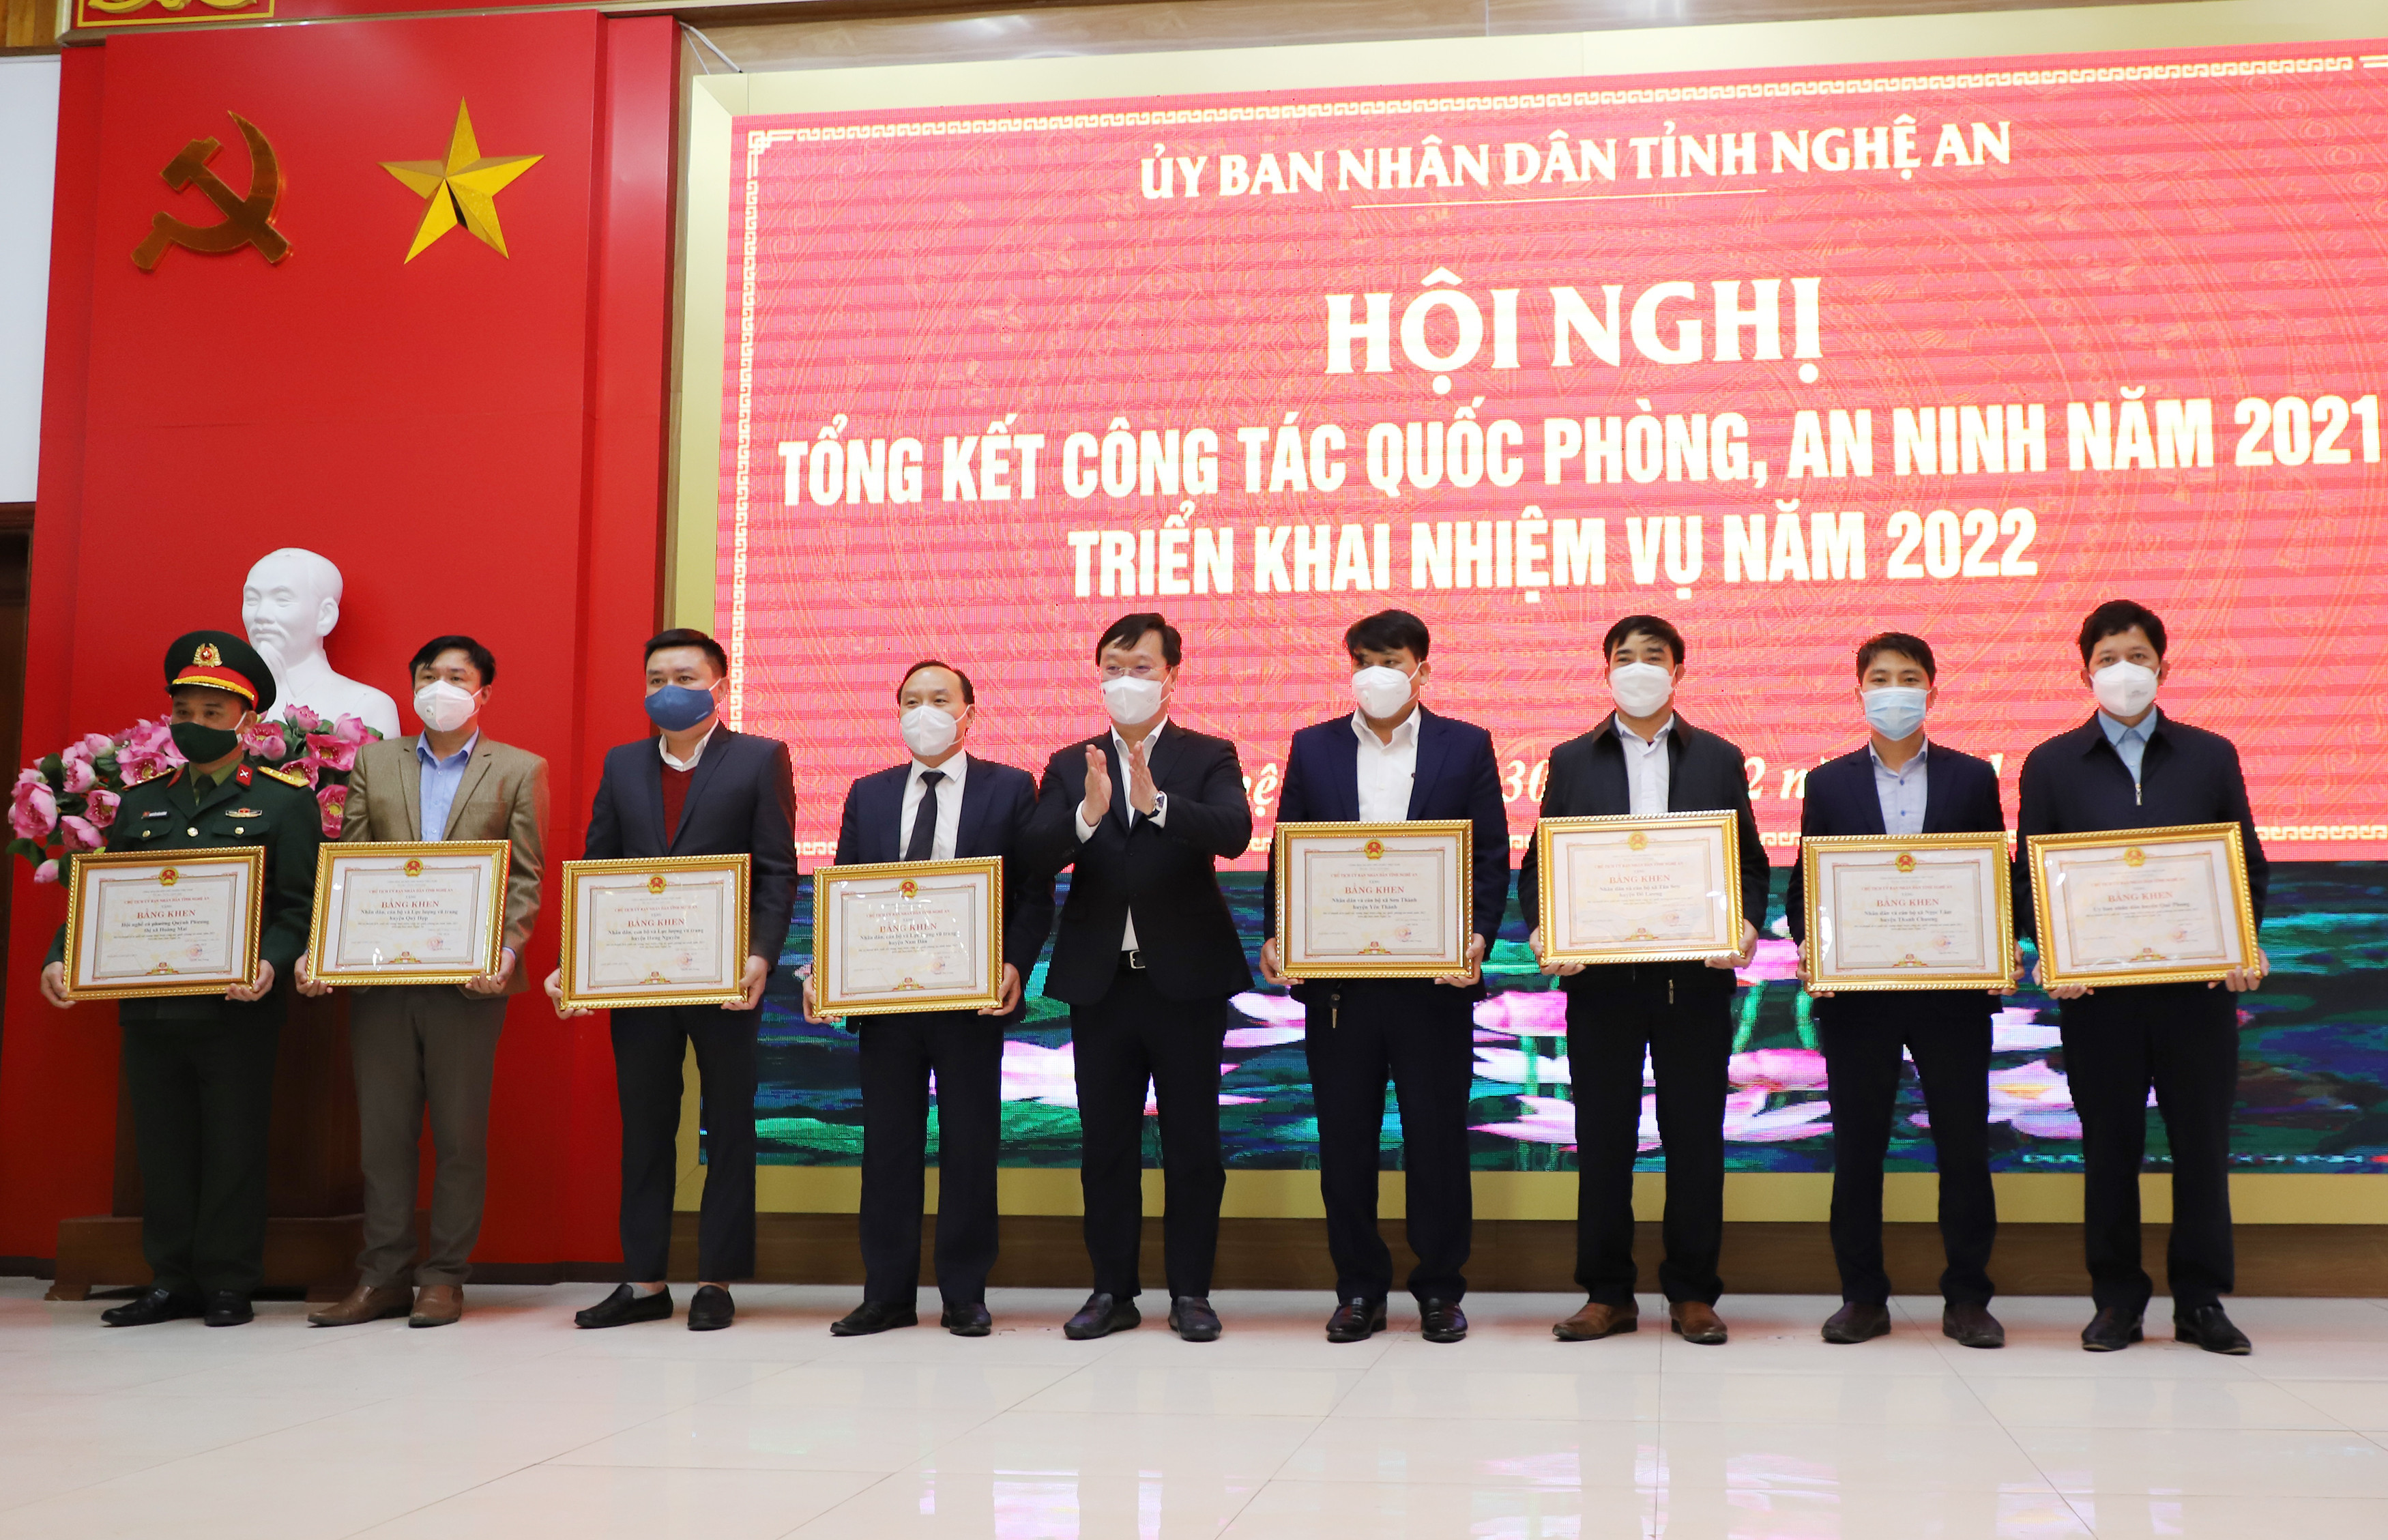 Đồng chí Nguyễn Đức Trung - Chủ tịch UBND tỉnh trao Bằng khen cho 8 tập thể có thành tích xuất sắc trong công tác quốc phòng, an ninh năm 2021. Ảnh: Phạm Bằng